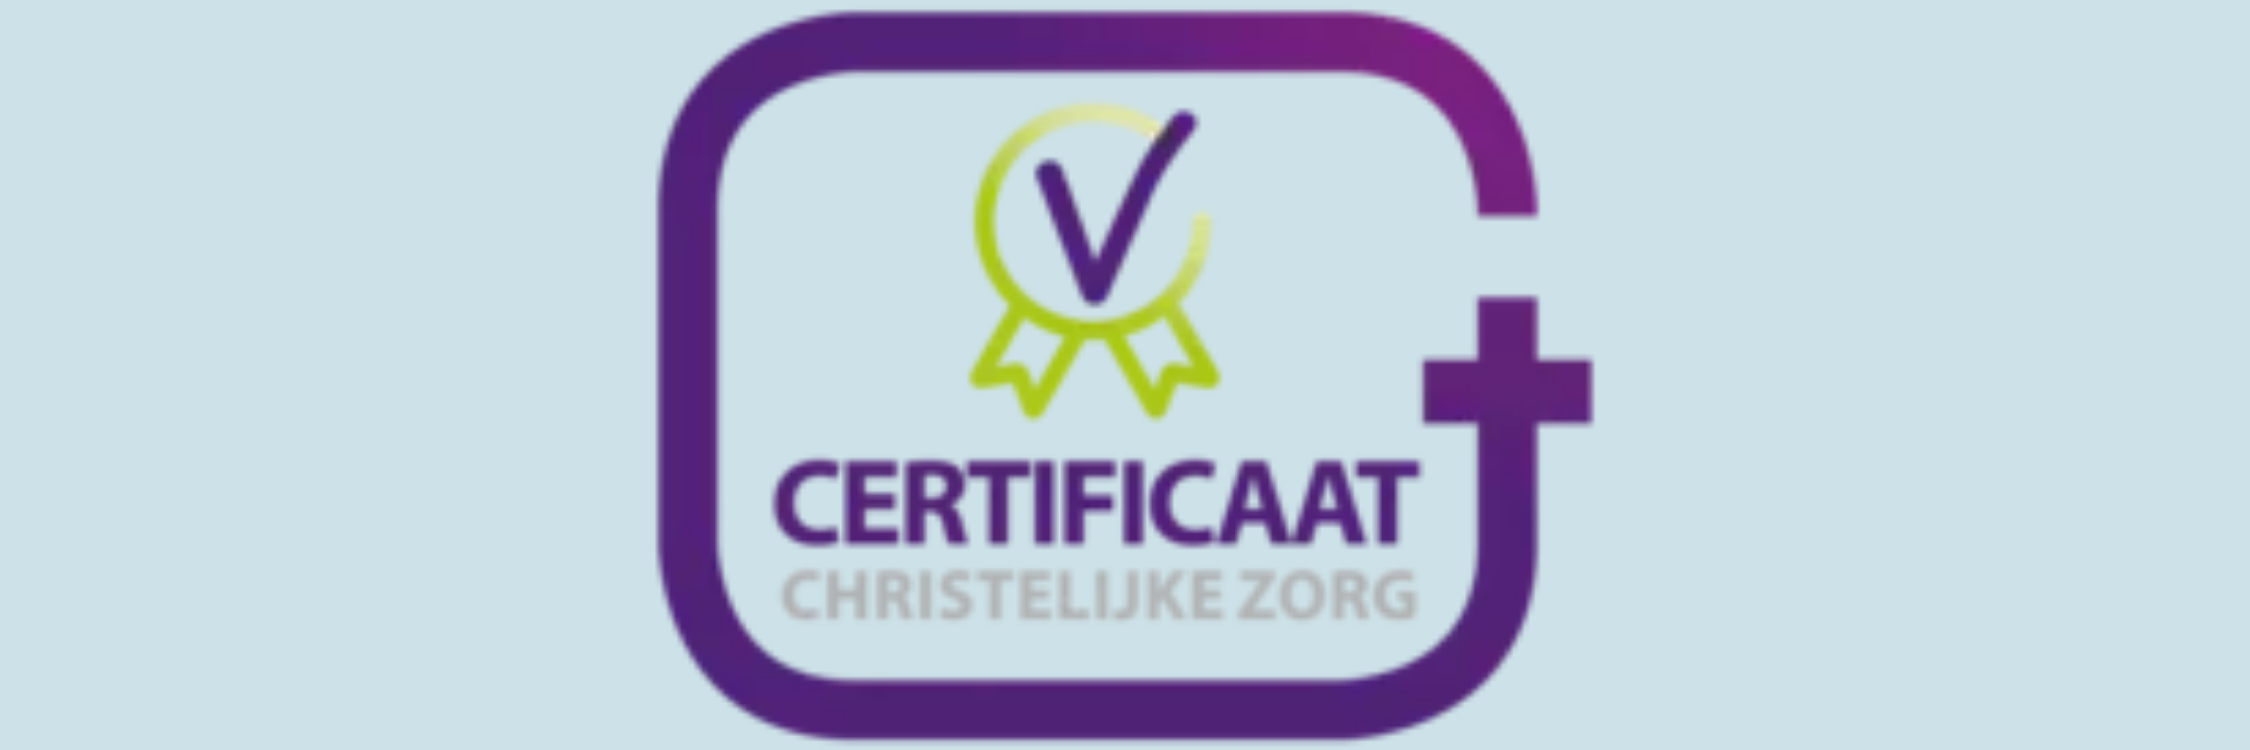 Certificaat Christelijke Zorg